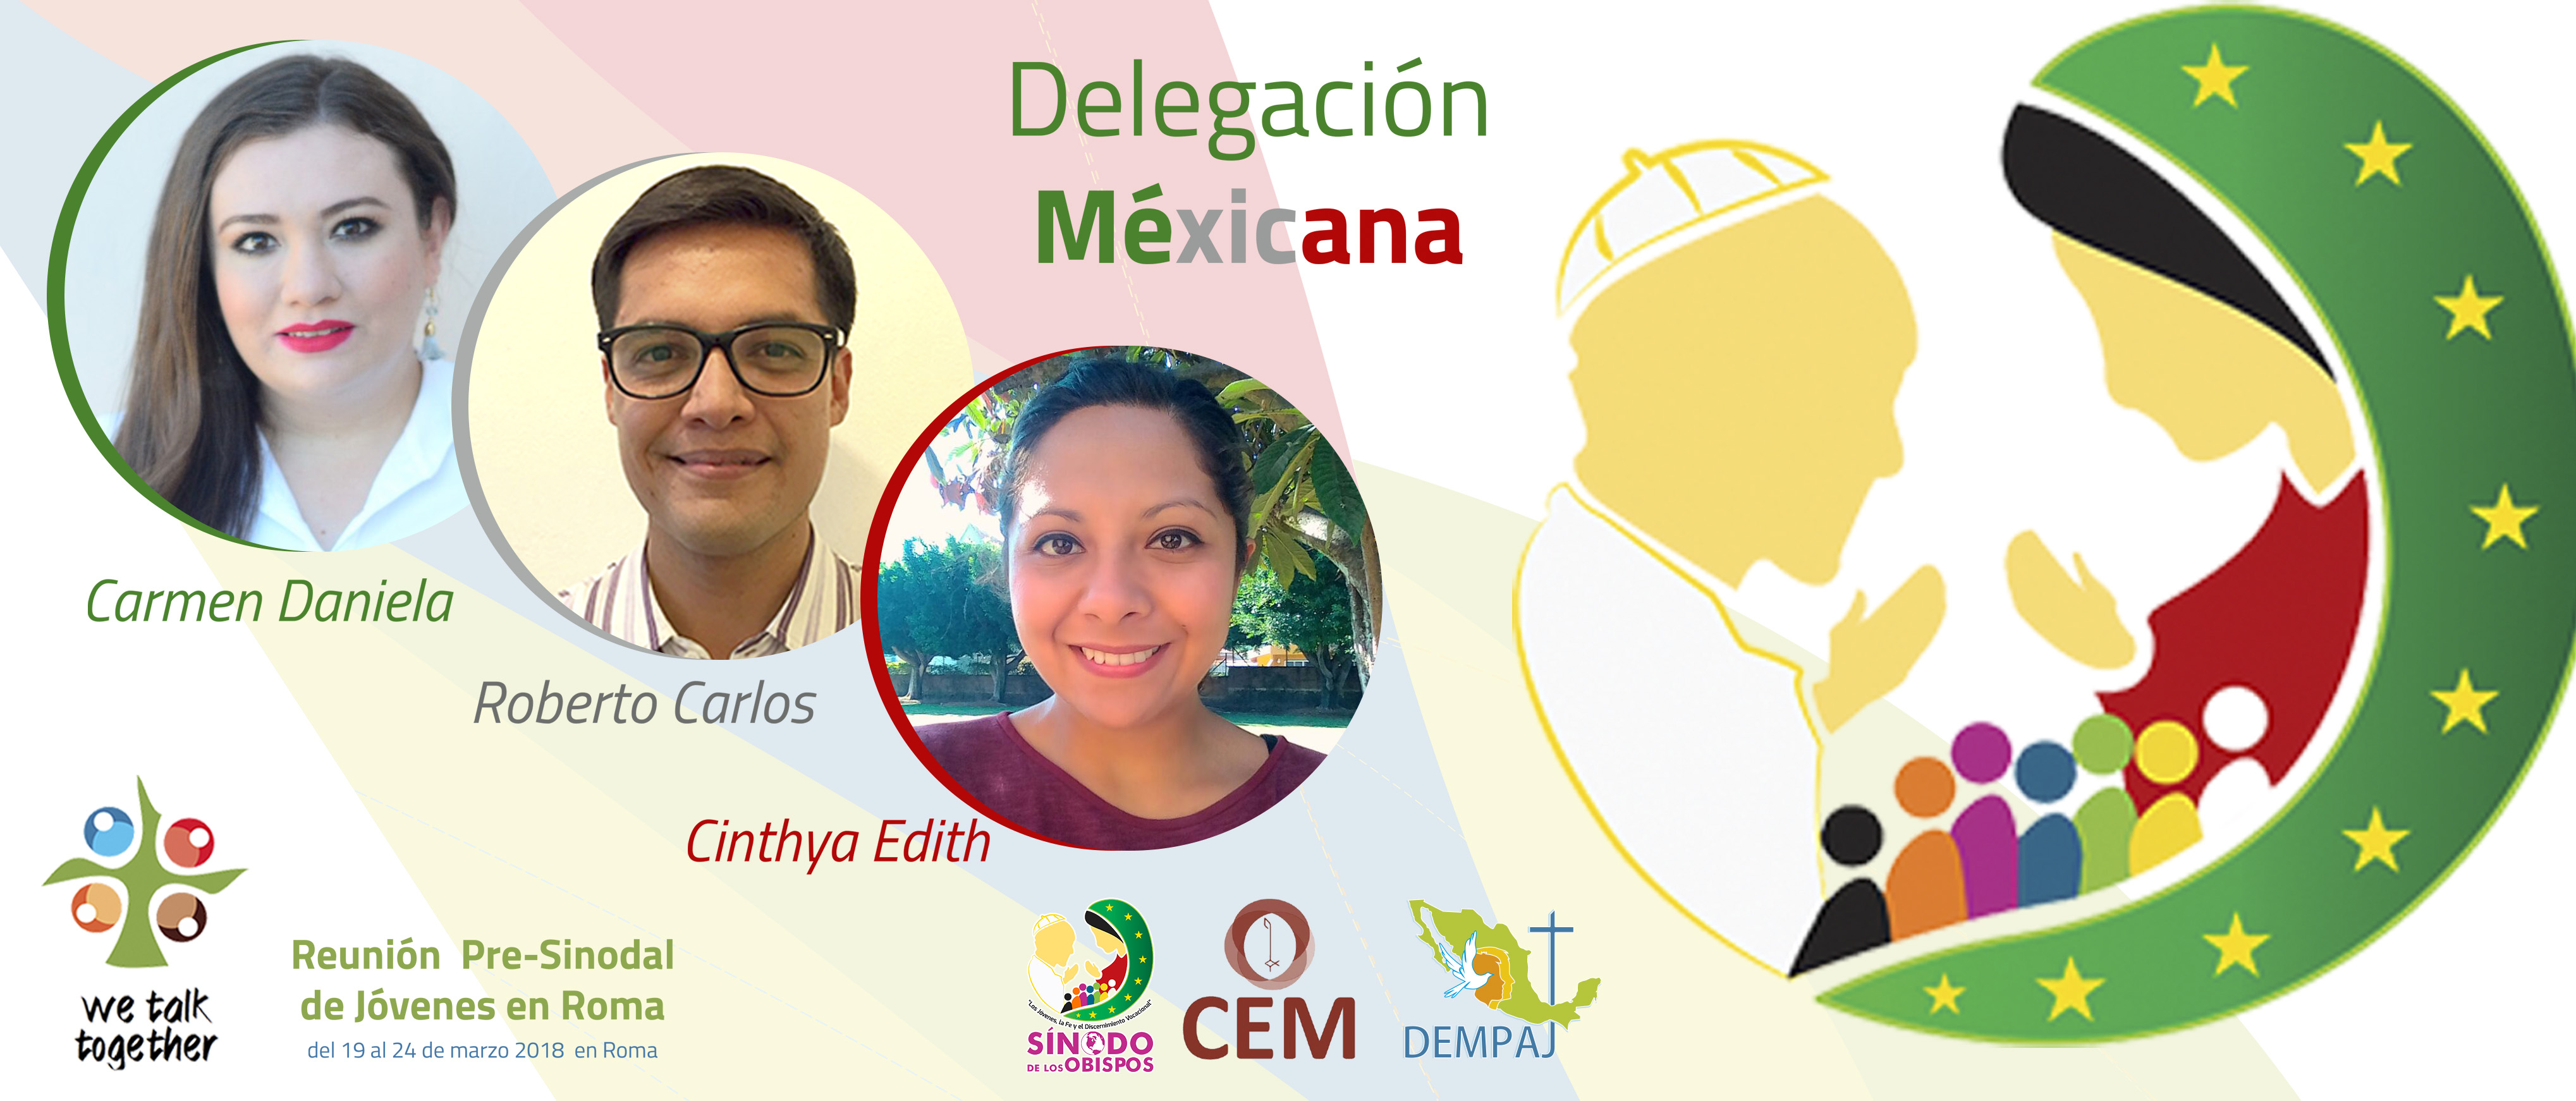 Delegación Mexicana En El Pre Sínodo De Jóvenes En Roma